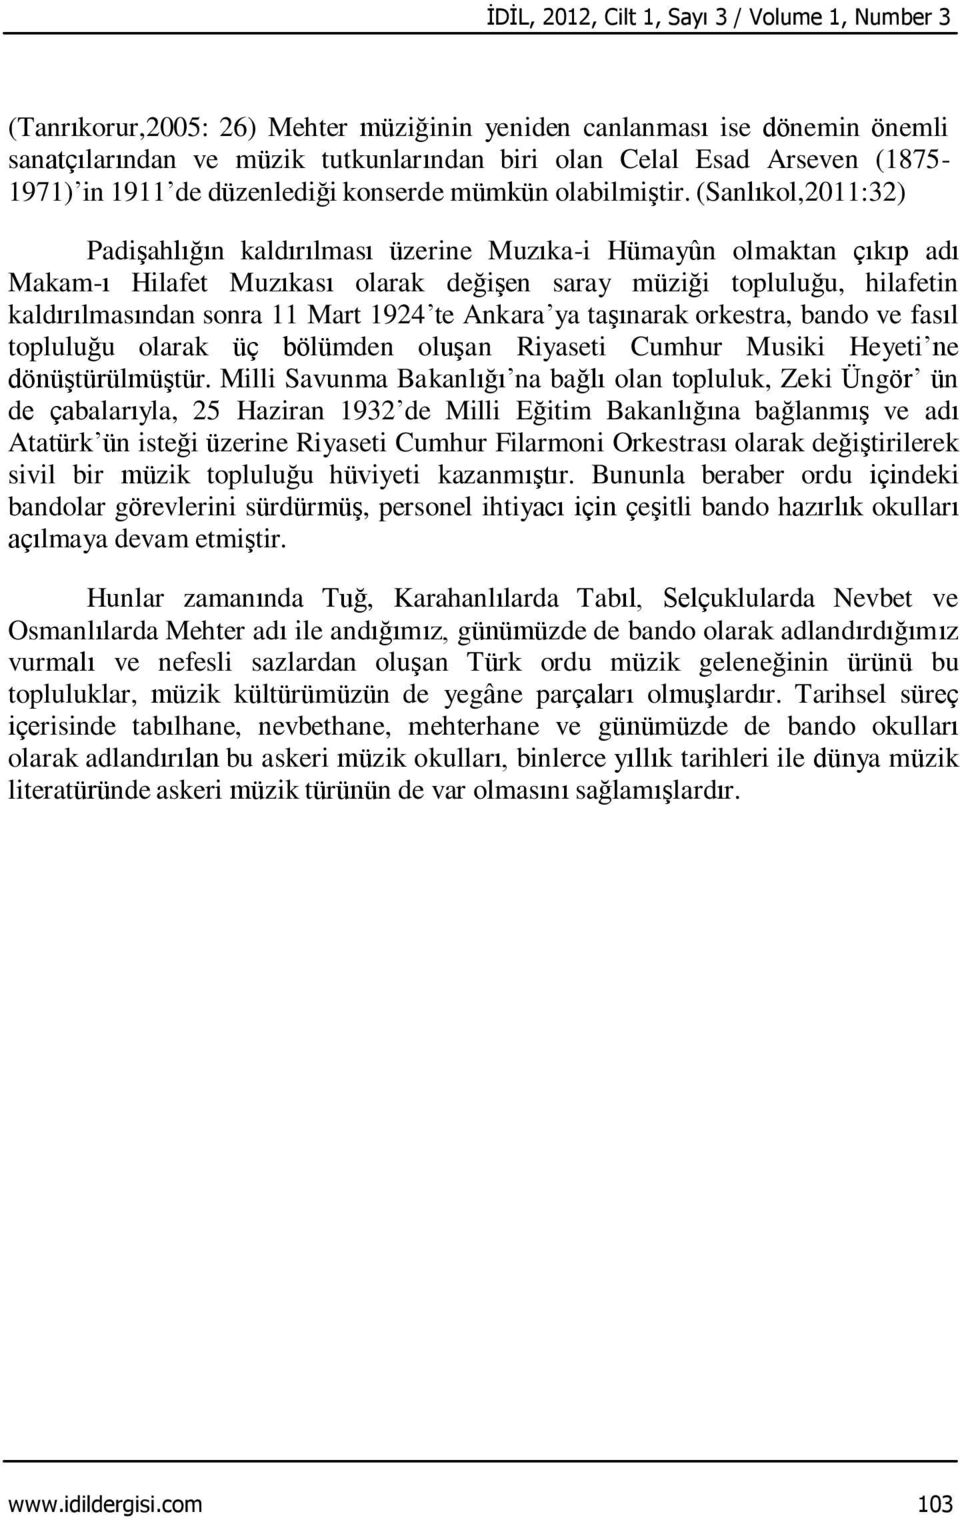 (Sanlıkol,2011:32) Padişahlığın kaldırılması üzerine Muzıka-i Hümayûn olmaktan çıkıp adı Makam-ı Hilafet Muzıkası olarak değişen saray müziği topluluğu, hilafetin kaldırılmasından sonra 11 Mart 1924